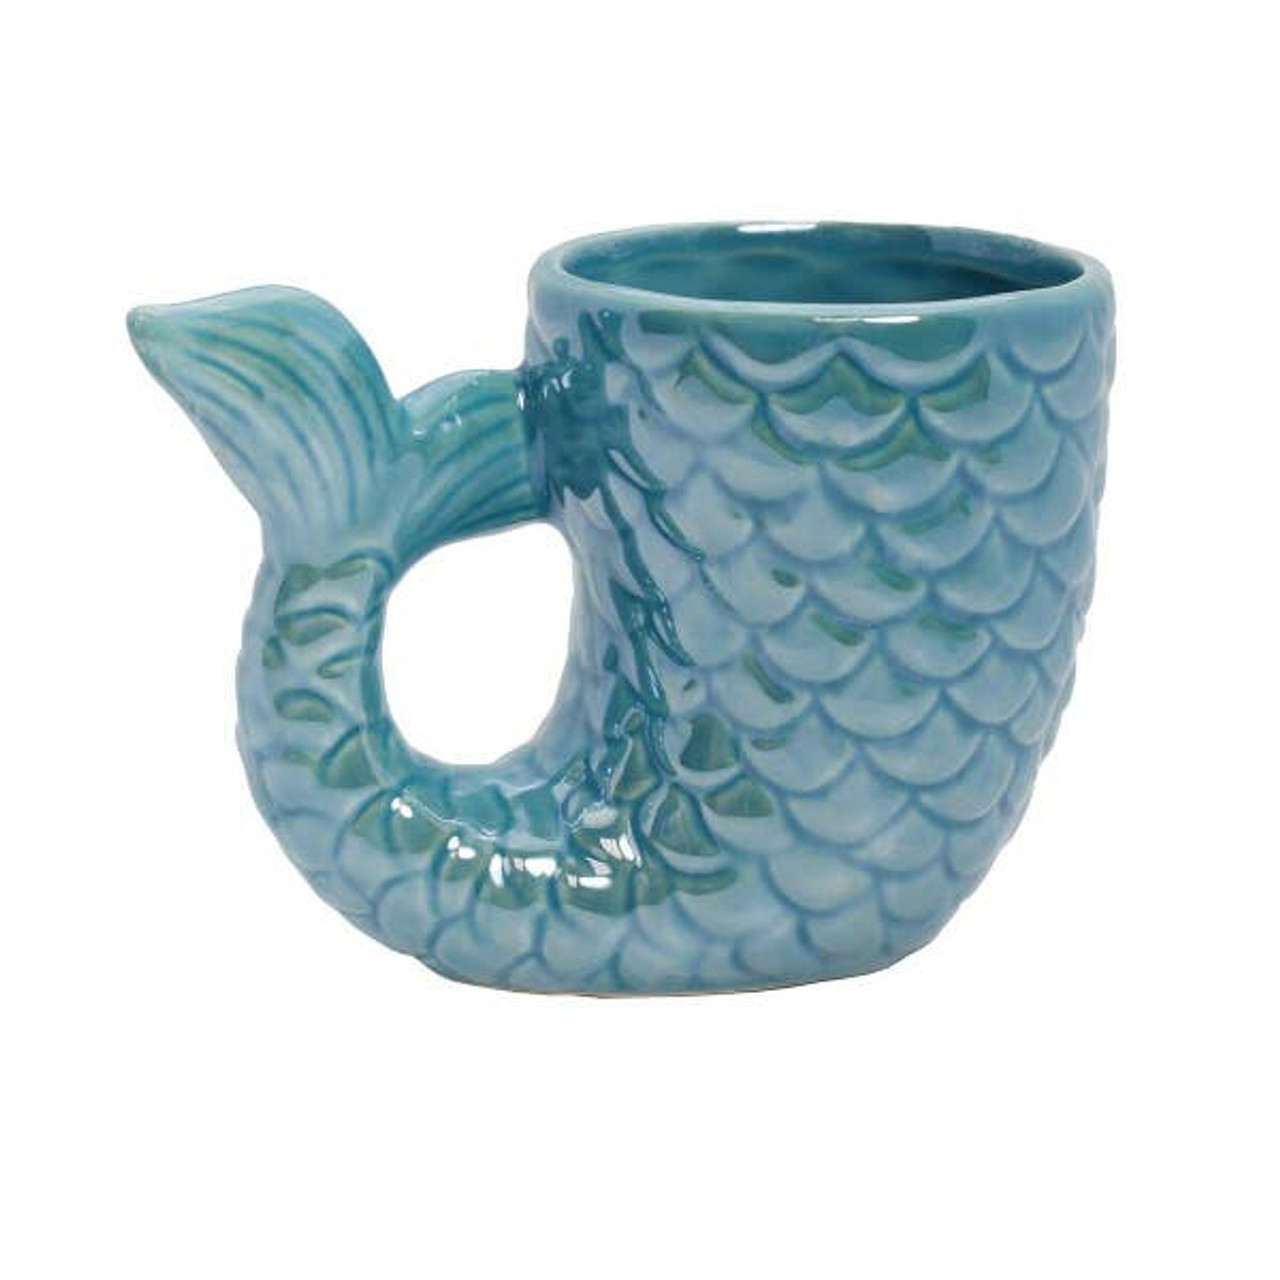 Mermaid Cup